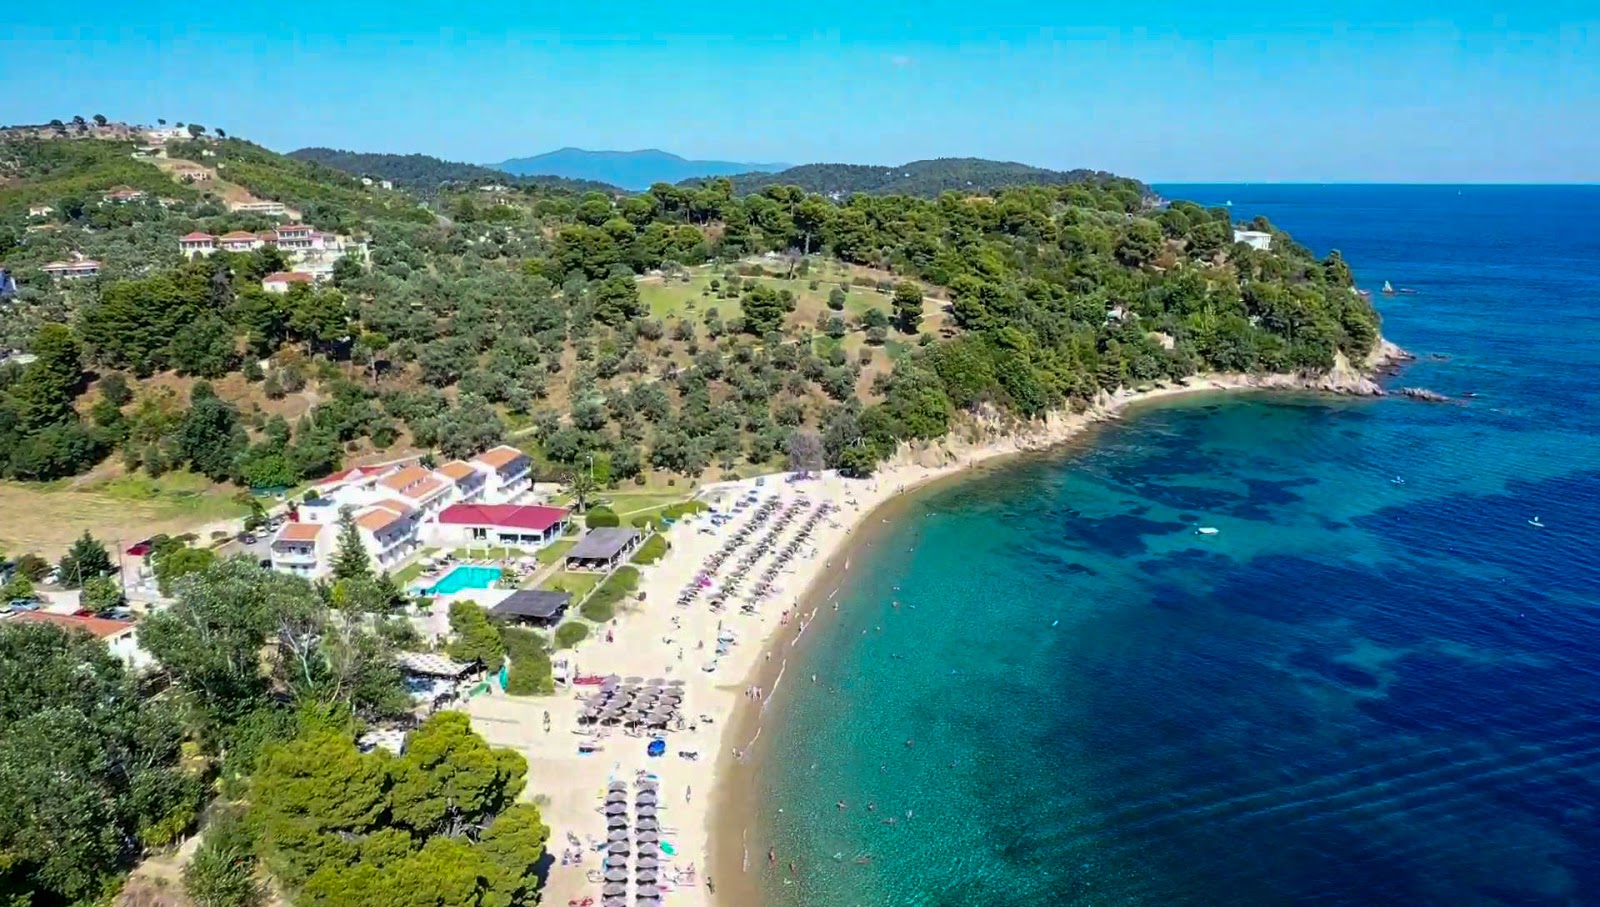 Foto af Troulos beach - populært sted blandt afslapningskendere